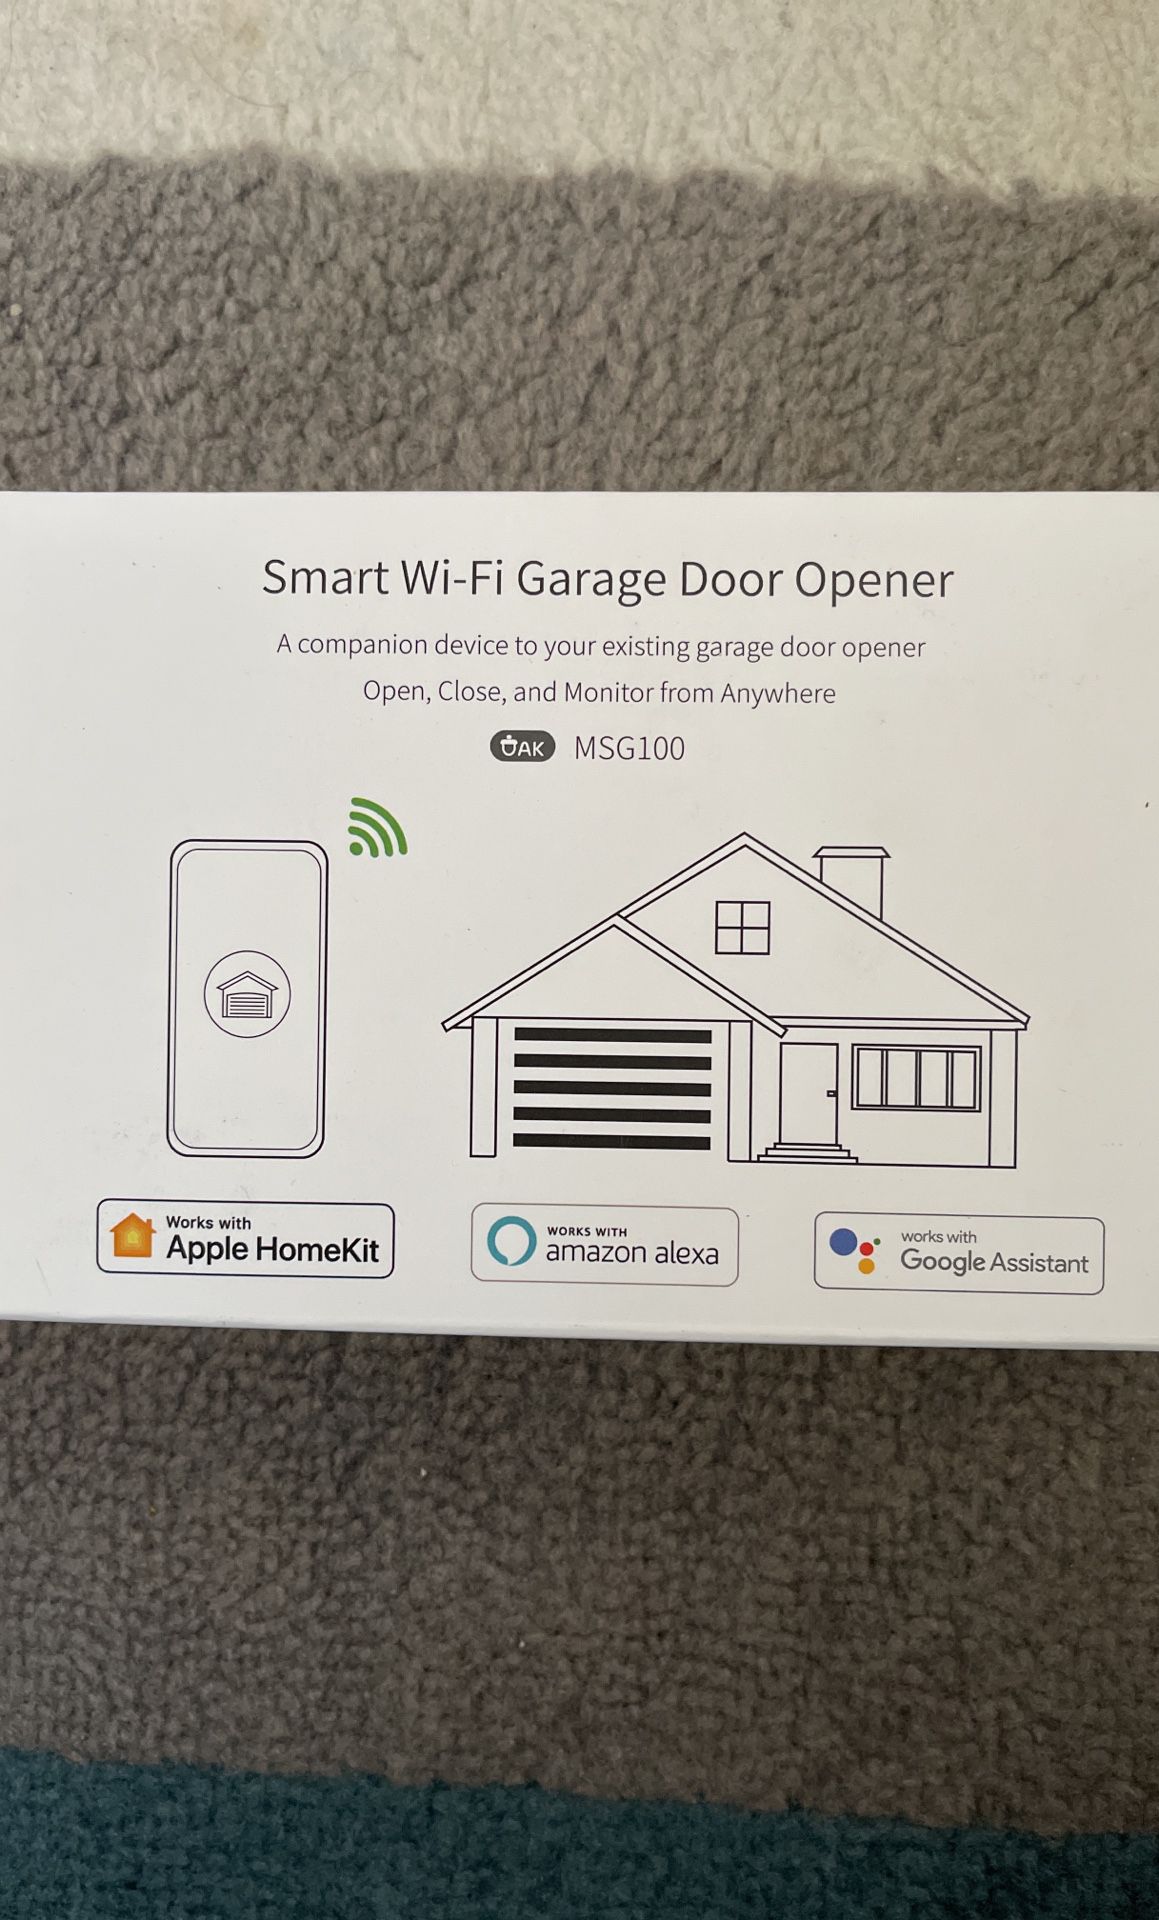 Meross Smart Wi-fi Garage Door Opener